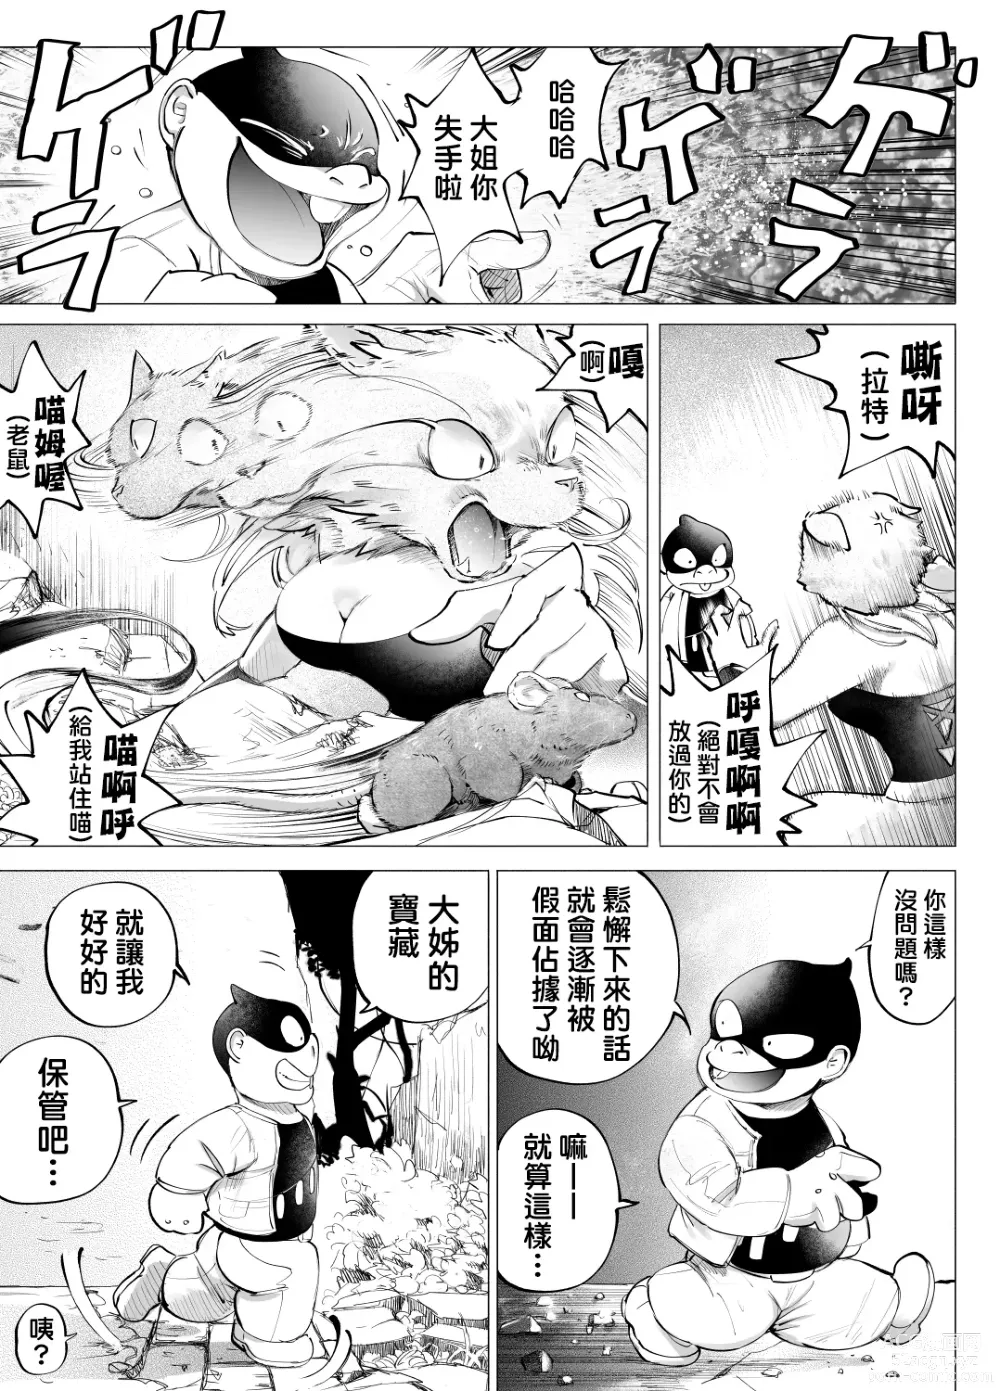 Page 5 of doujinshi 盗贼与面具遗迹